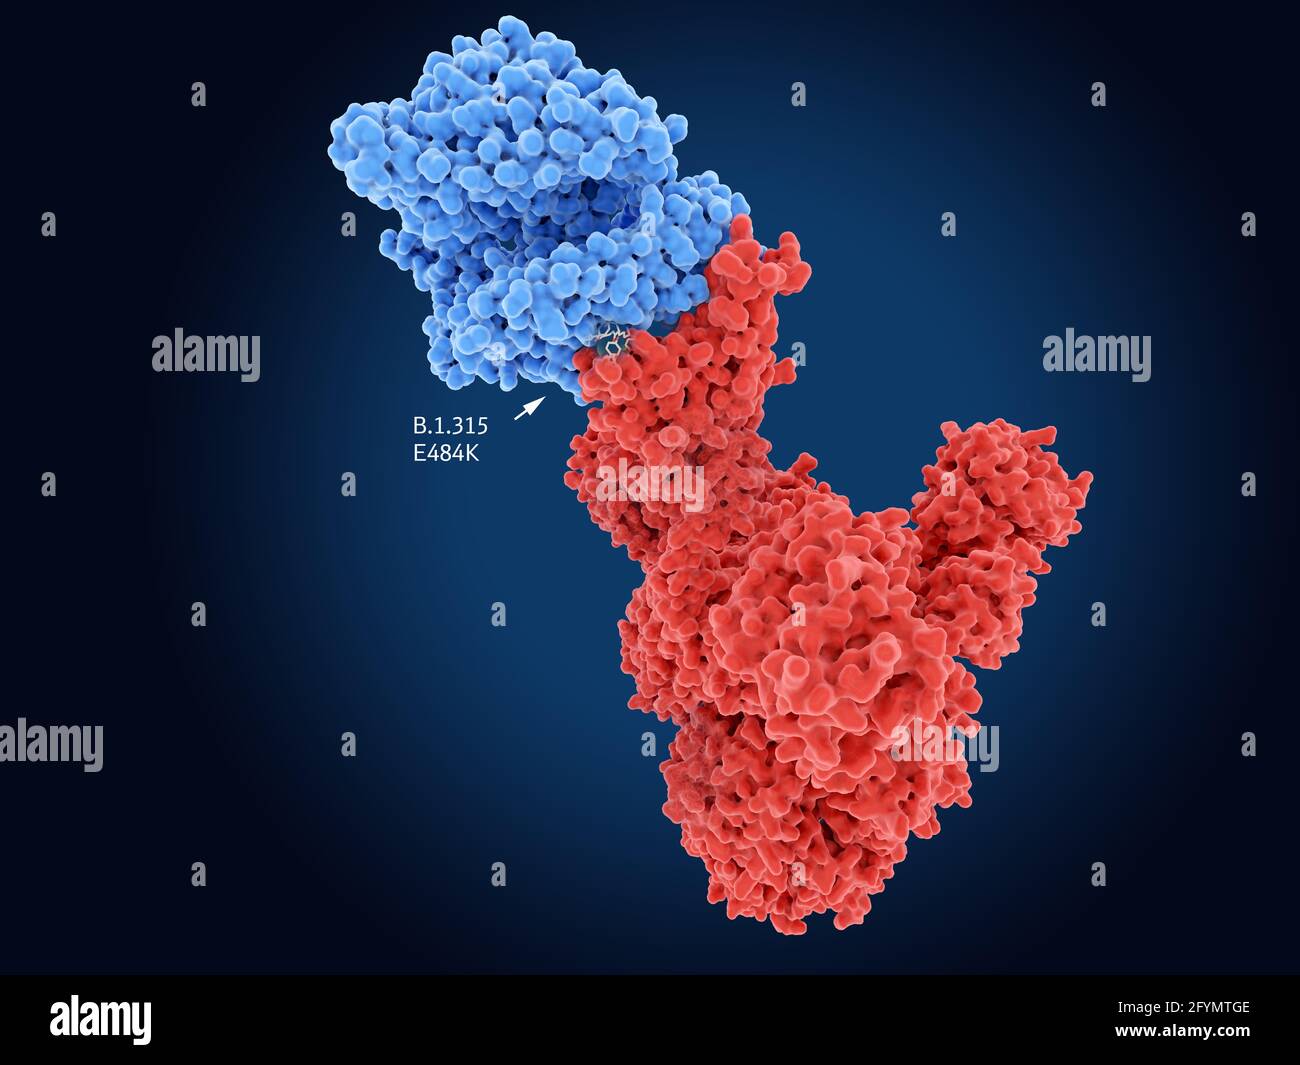 B.1.531 coronavirus variant spike protein, illustration Stock Photo